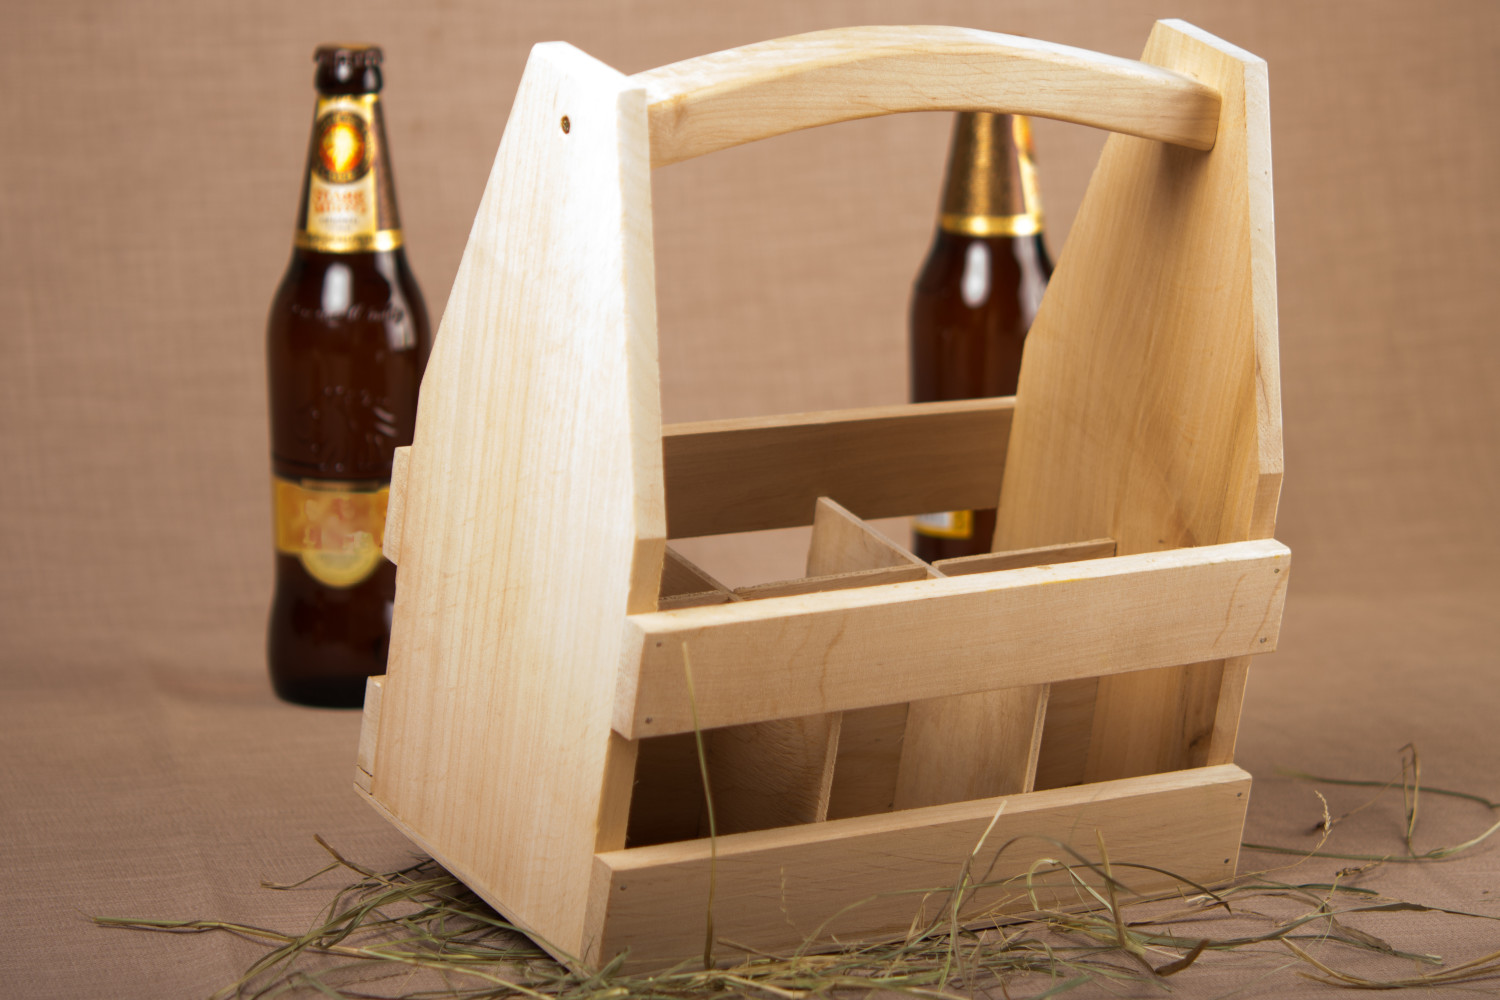 Beer bottle holder handmade wooden box for bottles kitchen ideas home decor photo 2